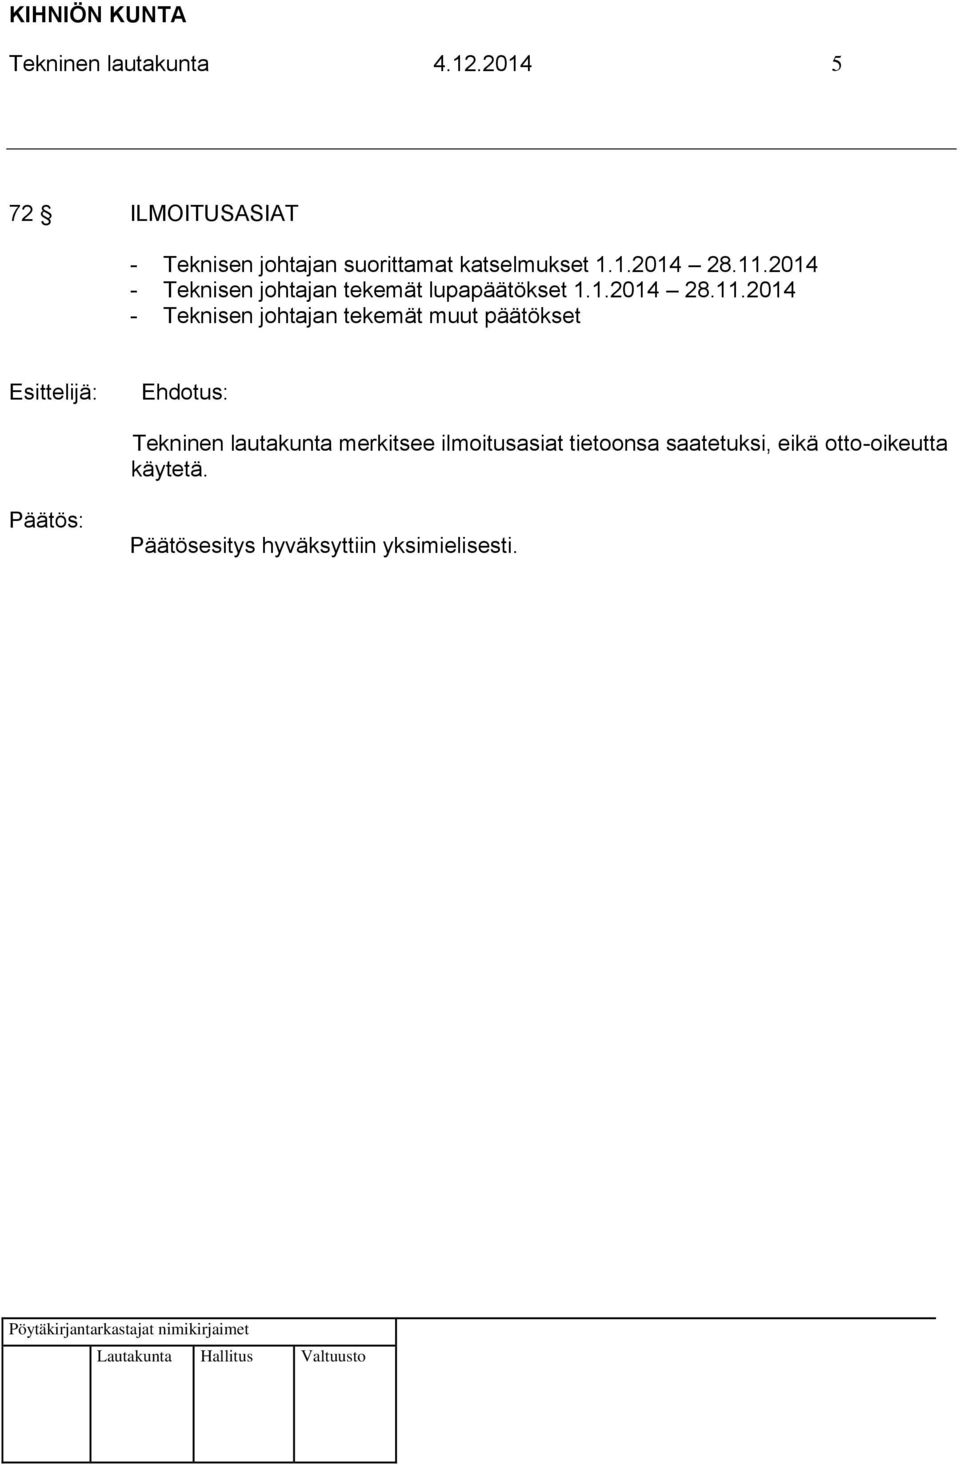 11.2014 - Teknisen johtajan tekemät lupapäätökset 1.1.2014 28.11.2014 -